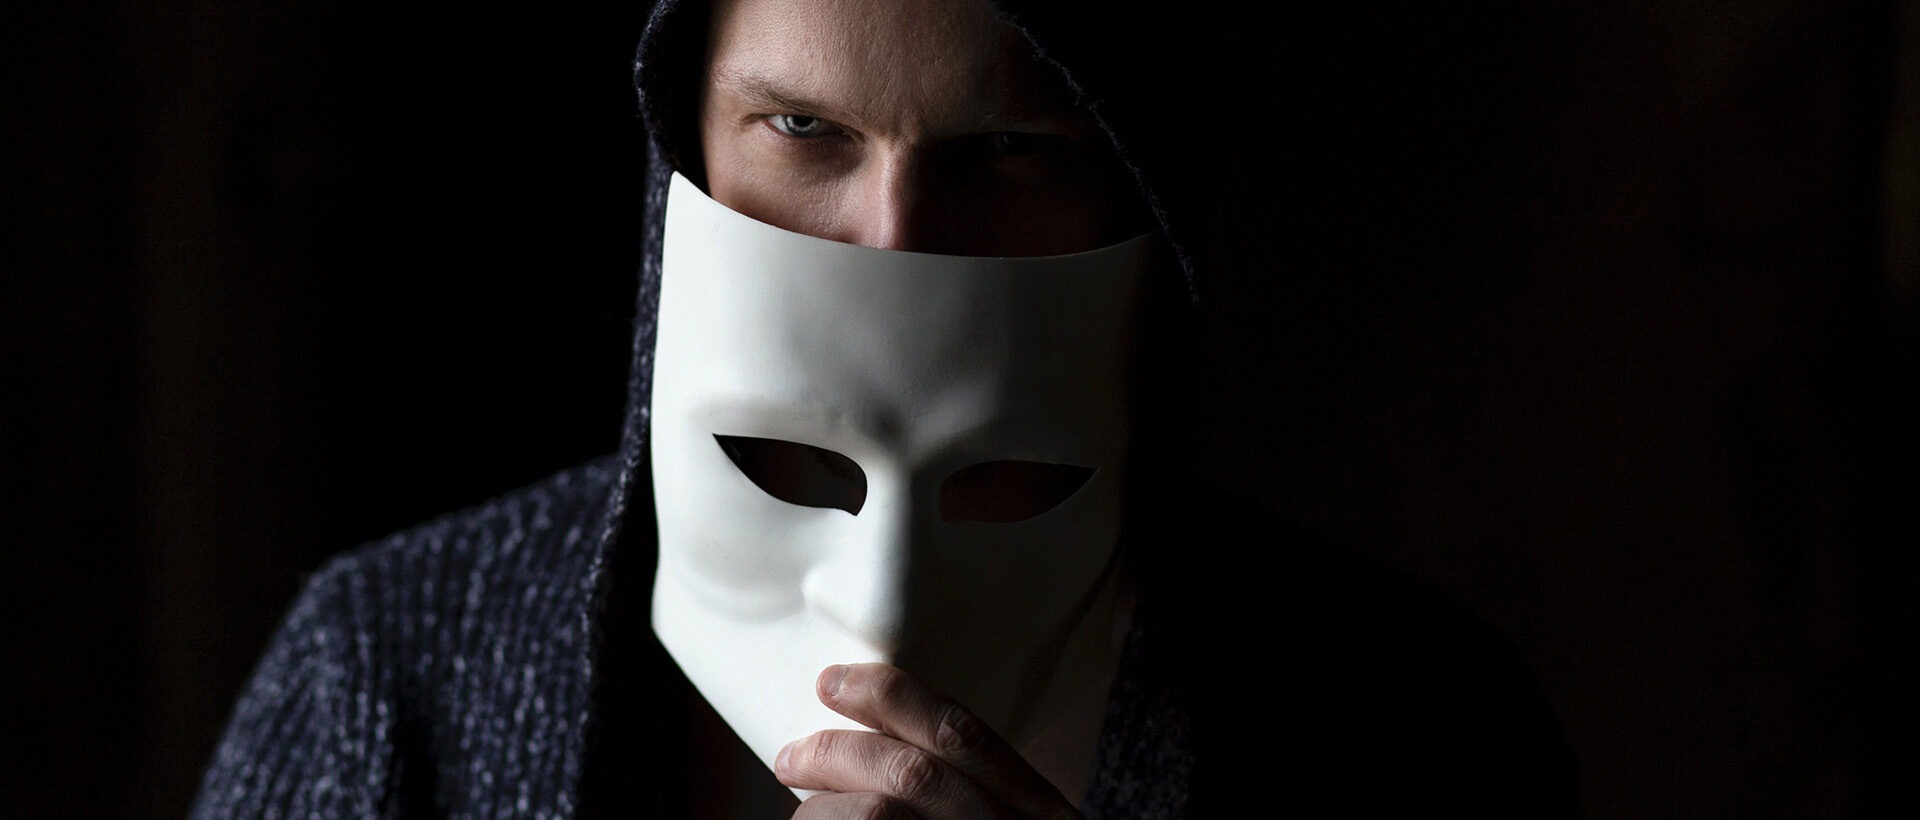 Mann mit Maske vor dem Gesicht als Symbol für Anonymität